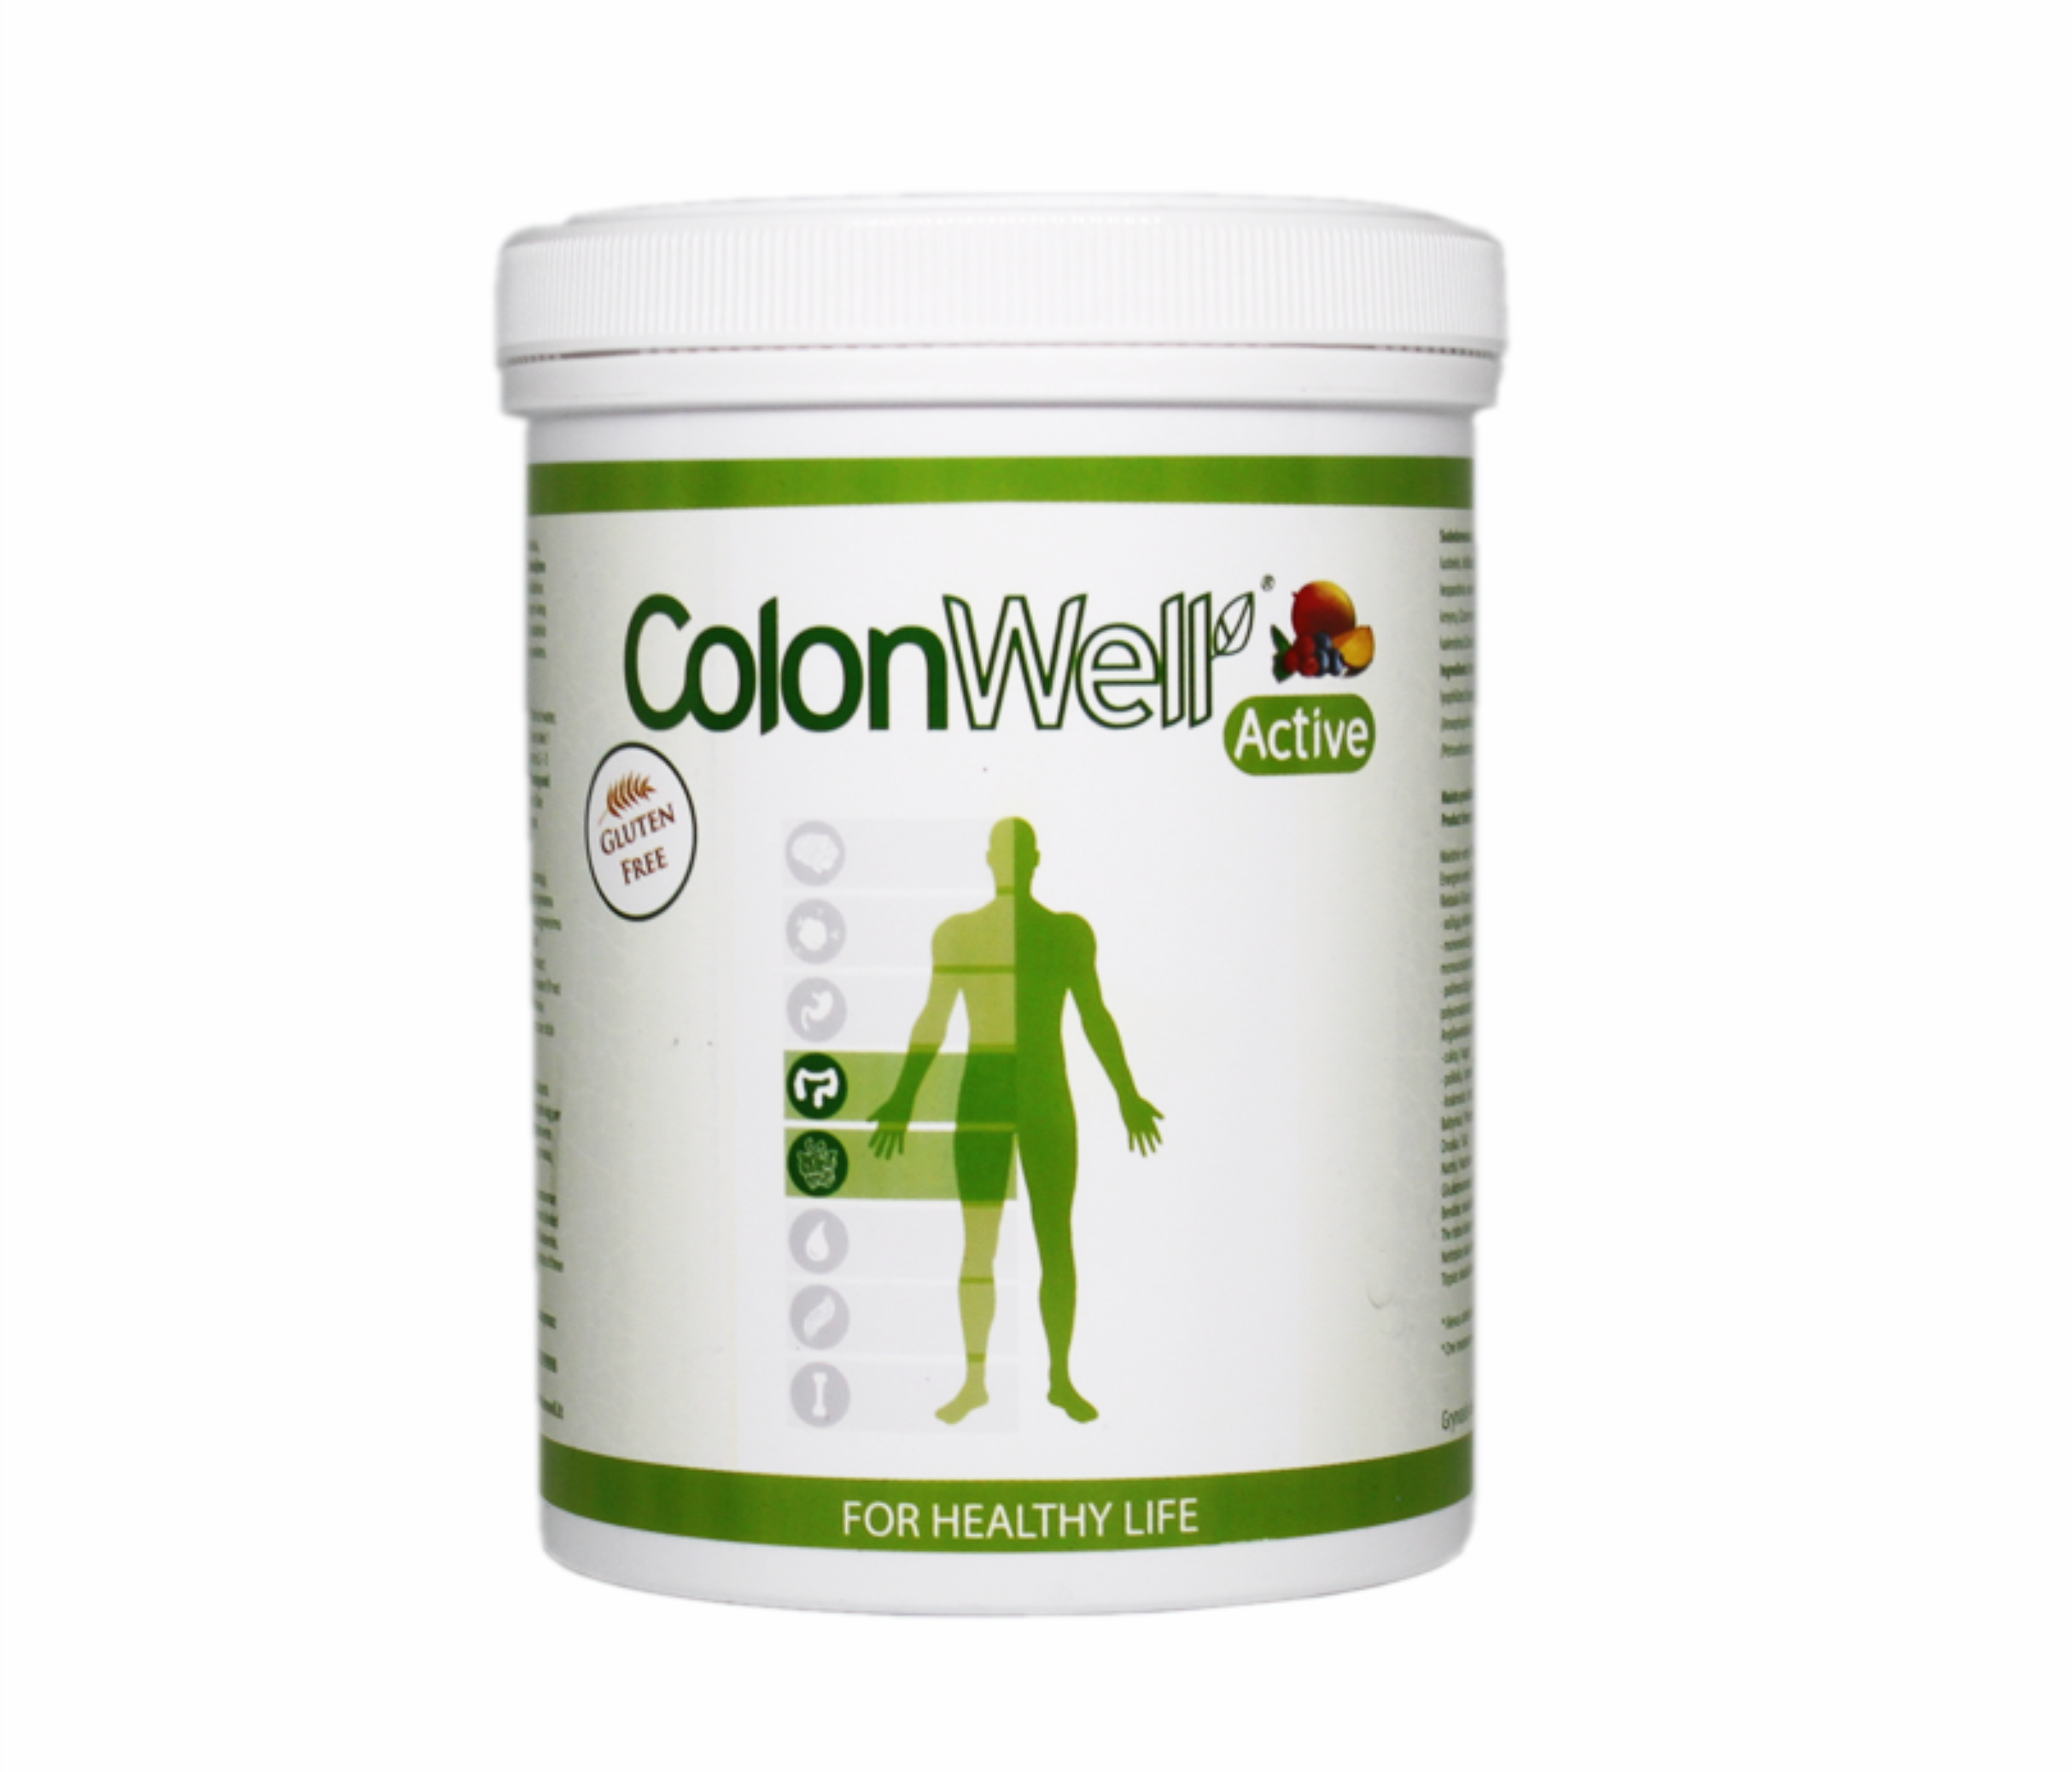 Colonwell.lt produktas - ColonWell Active - žolelių ir sėklų mišinys, vaisių skonio (su liofilizuotais vaisiais) 400g.